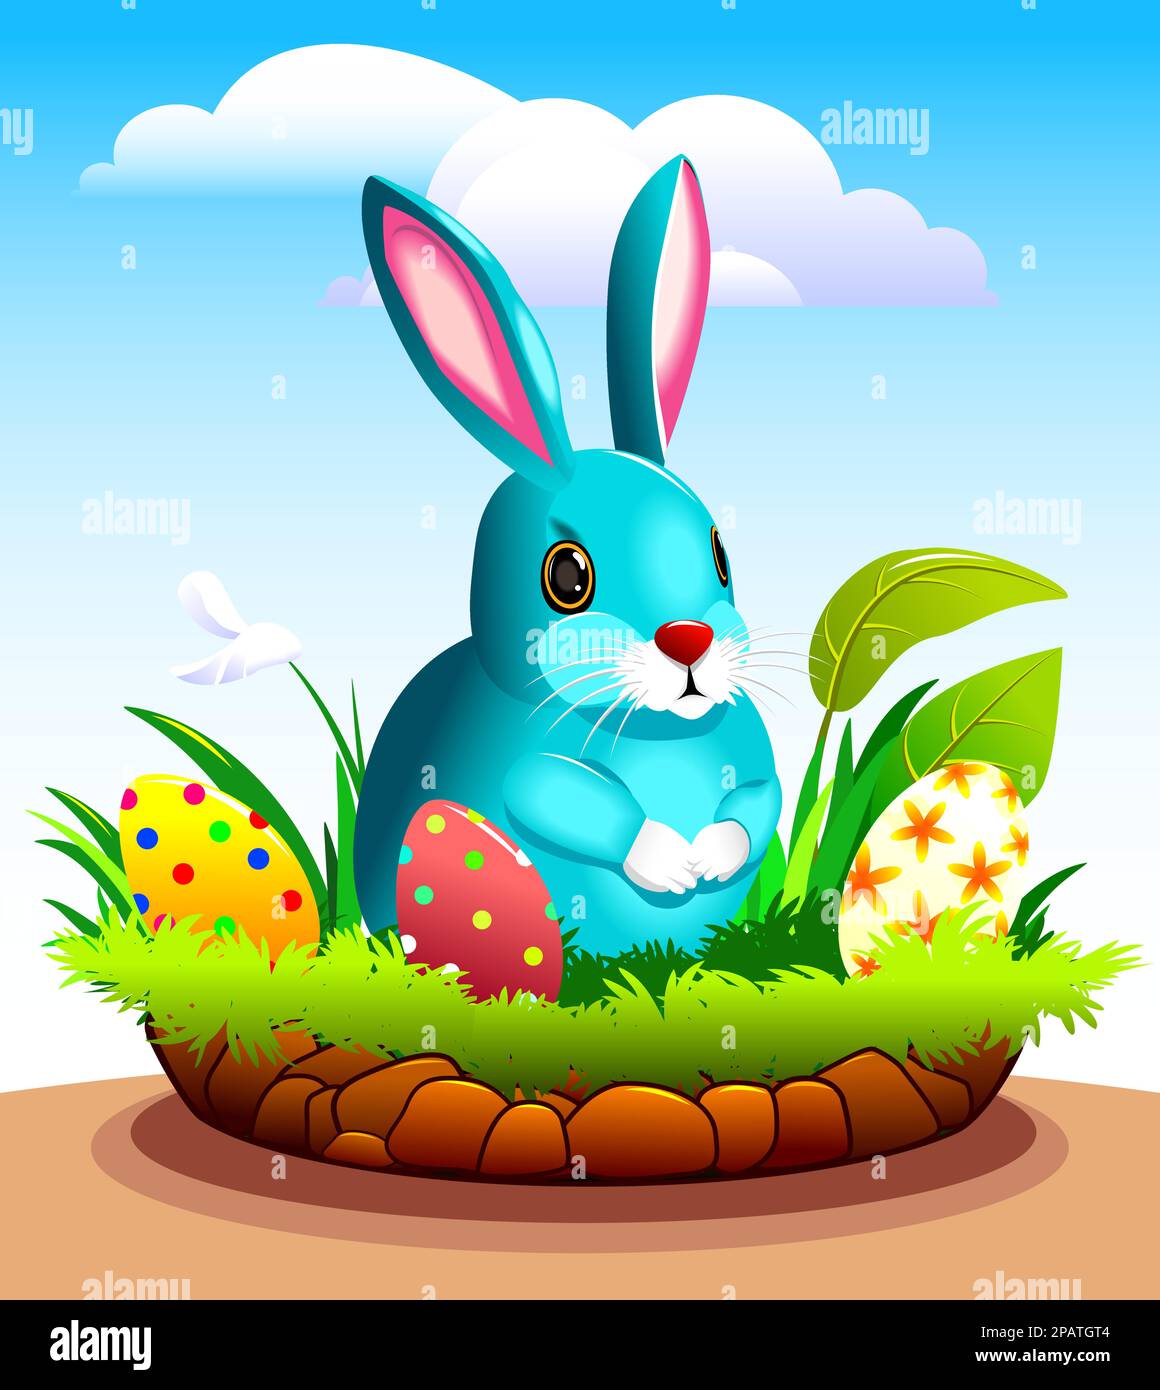 Le lapin de la bande dessinée est assis près du trou de lapin sur l'herbe parmi les oeufs de Pâques. Illustration de Vecteur